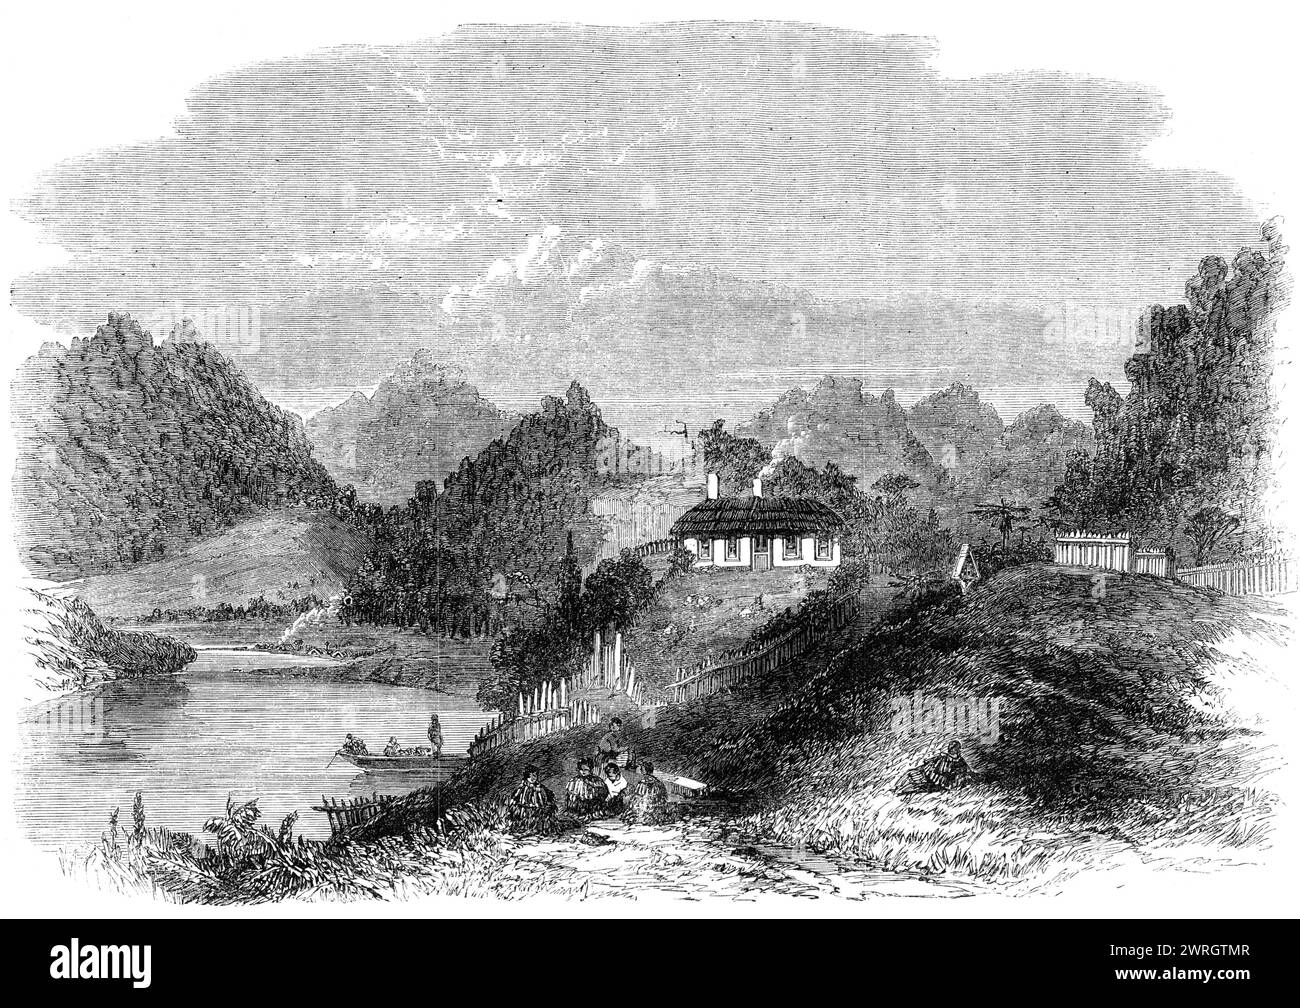 Stazione missionaria ecclesiastica sul fiume Waikato, nuova Zelanda, 1864. "La mission-House di Pepepe è uno dei luoghi più pittoreschi sul fiume Waikato. Si trova su un knoll roccioso, a strapiombo sull'ampio fiume, non lontano dal suo incrocio con il Waipa, ed è circondato da verdi pendii muschiati e valli di felci, mentre boschi scuri e cupi ricoprono i ripidi versanti delle colline adiacenti. A poca distanza, vicino al vicino villaggio nativo, si trova la chiesa, e più avanti lungo il fiume si trova il pah del famoso capo e re Maori, te Whero-whero. Tutte le banche di Th Foto Stock